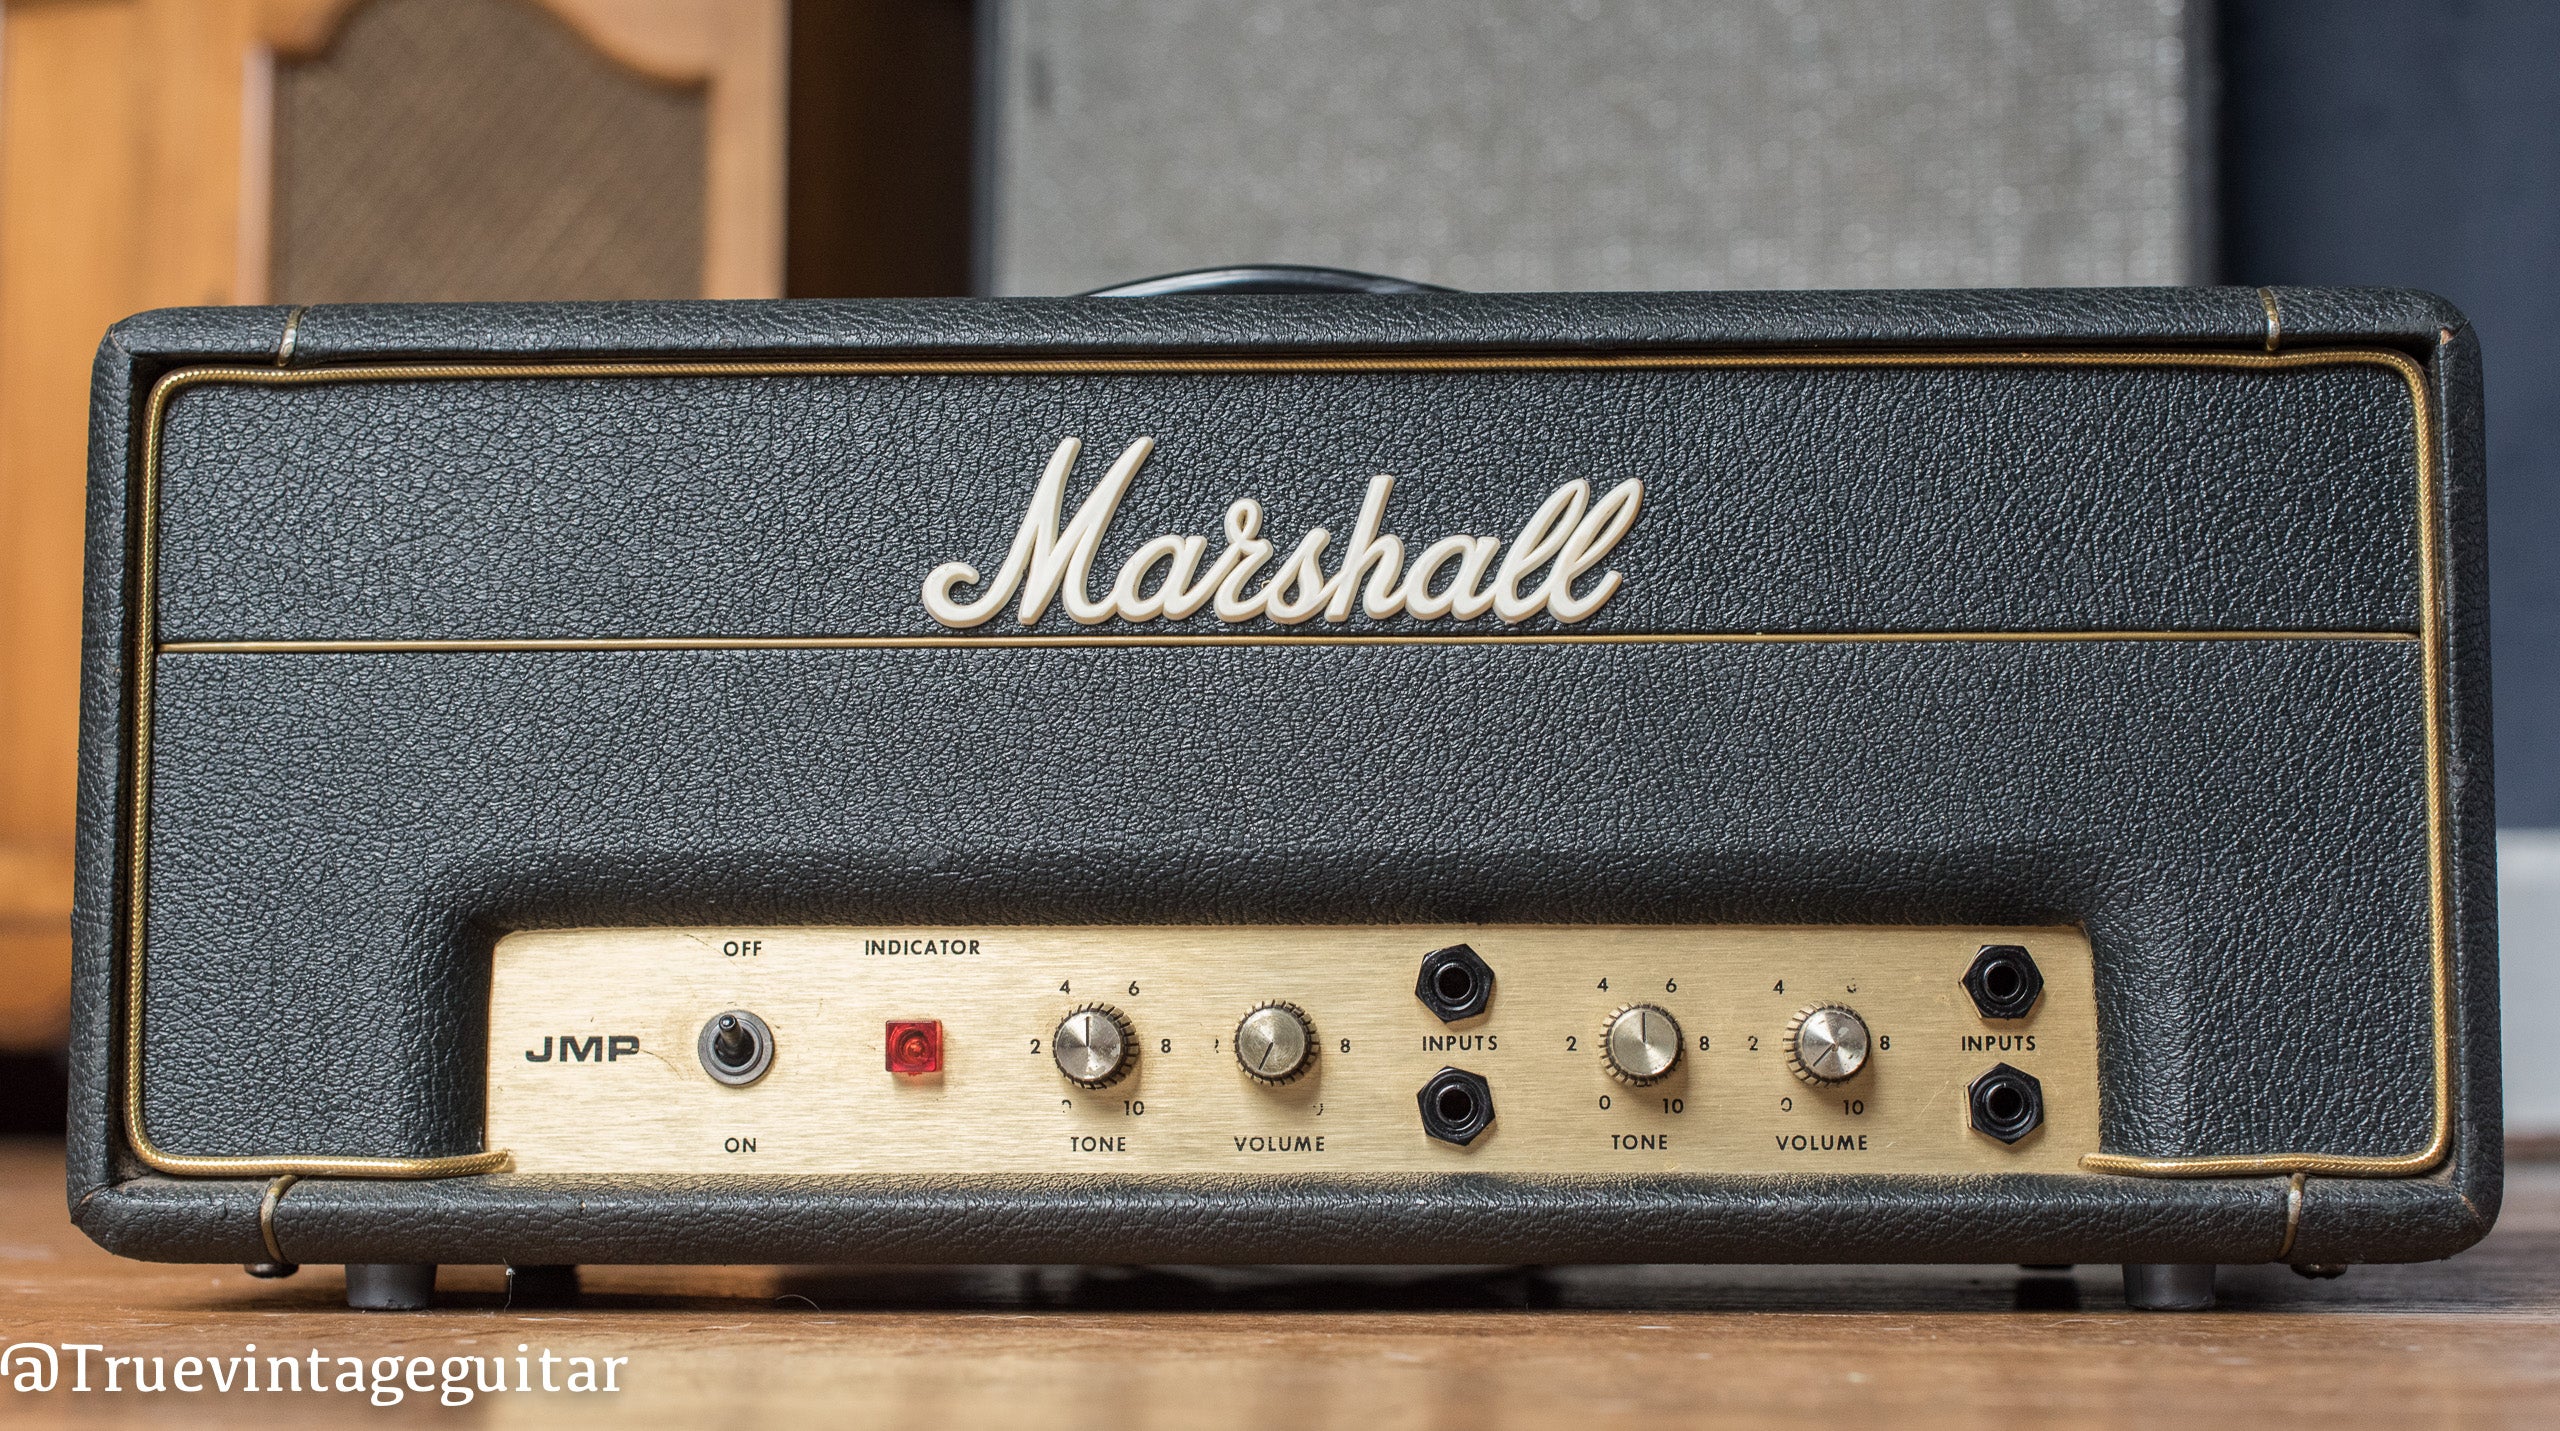 1972 Marshall Lead-Bass 20 watt guitar amplifier